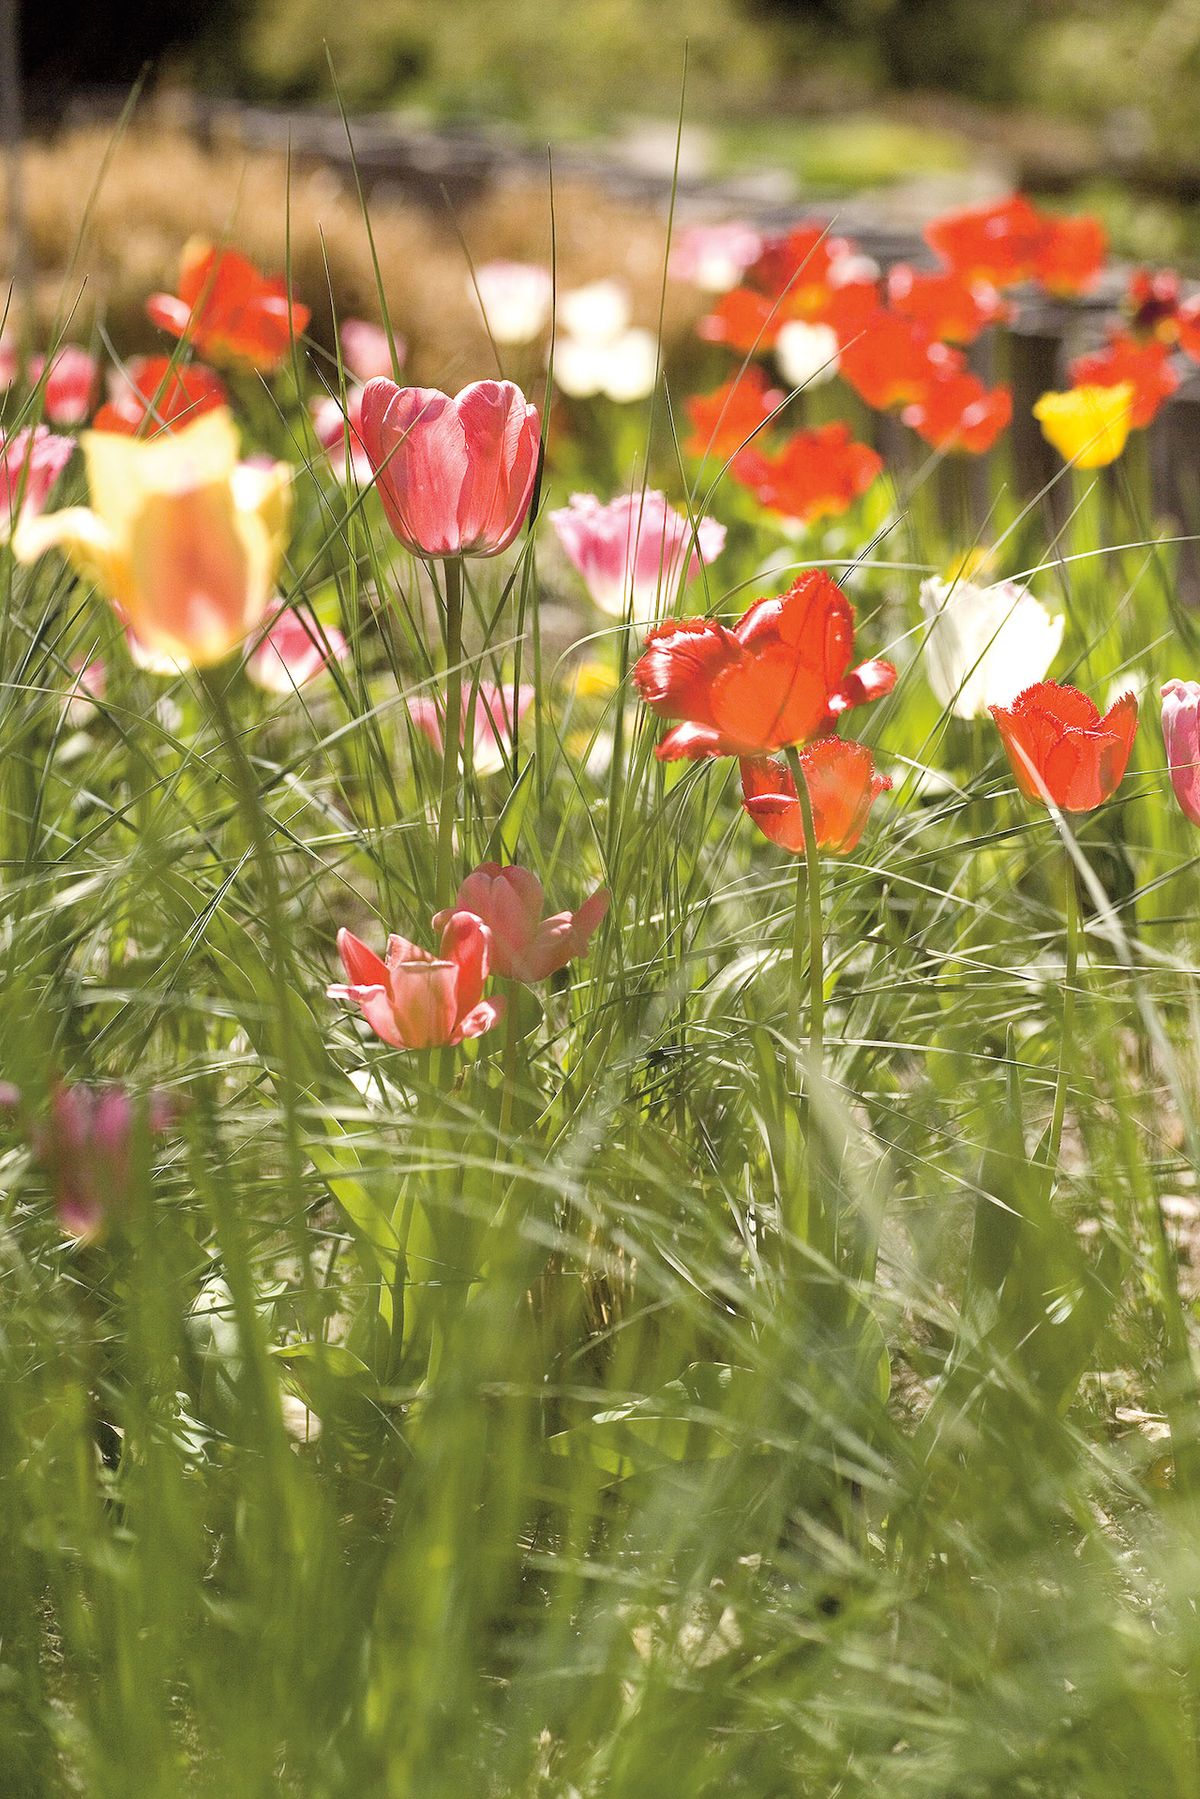 Snové partnerství. Máloco vyváží jemný půvab zářivých tulipánů v objetí časně rašících okrasných trav.